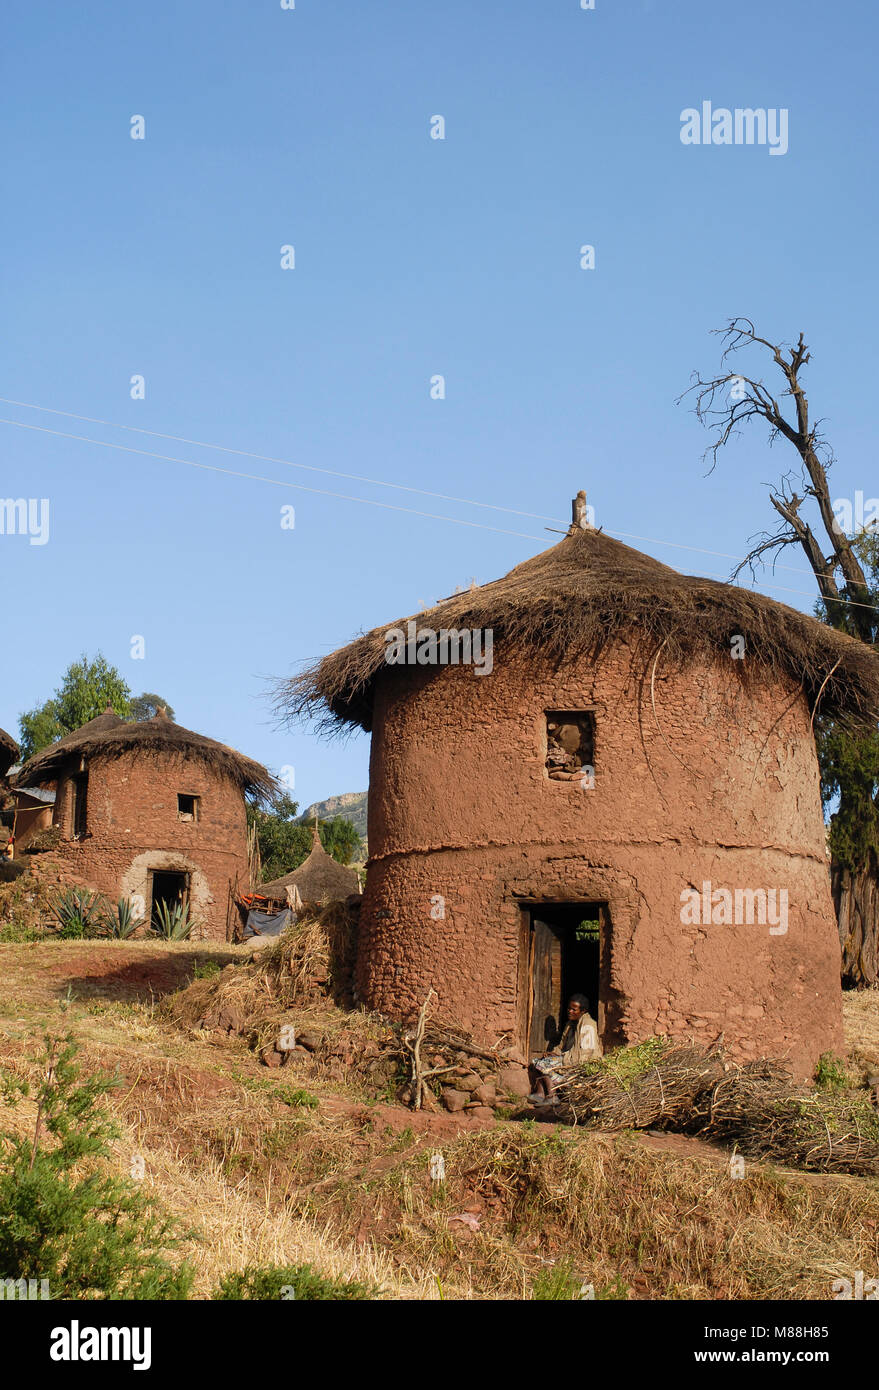 Äthiopien Lalibela, traditionellen runden Stein und Lehm Hütte/AETHIOPIEN Lalibela, runde Stein und Lehm Huette Stockfoto